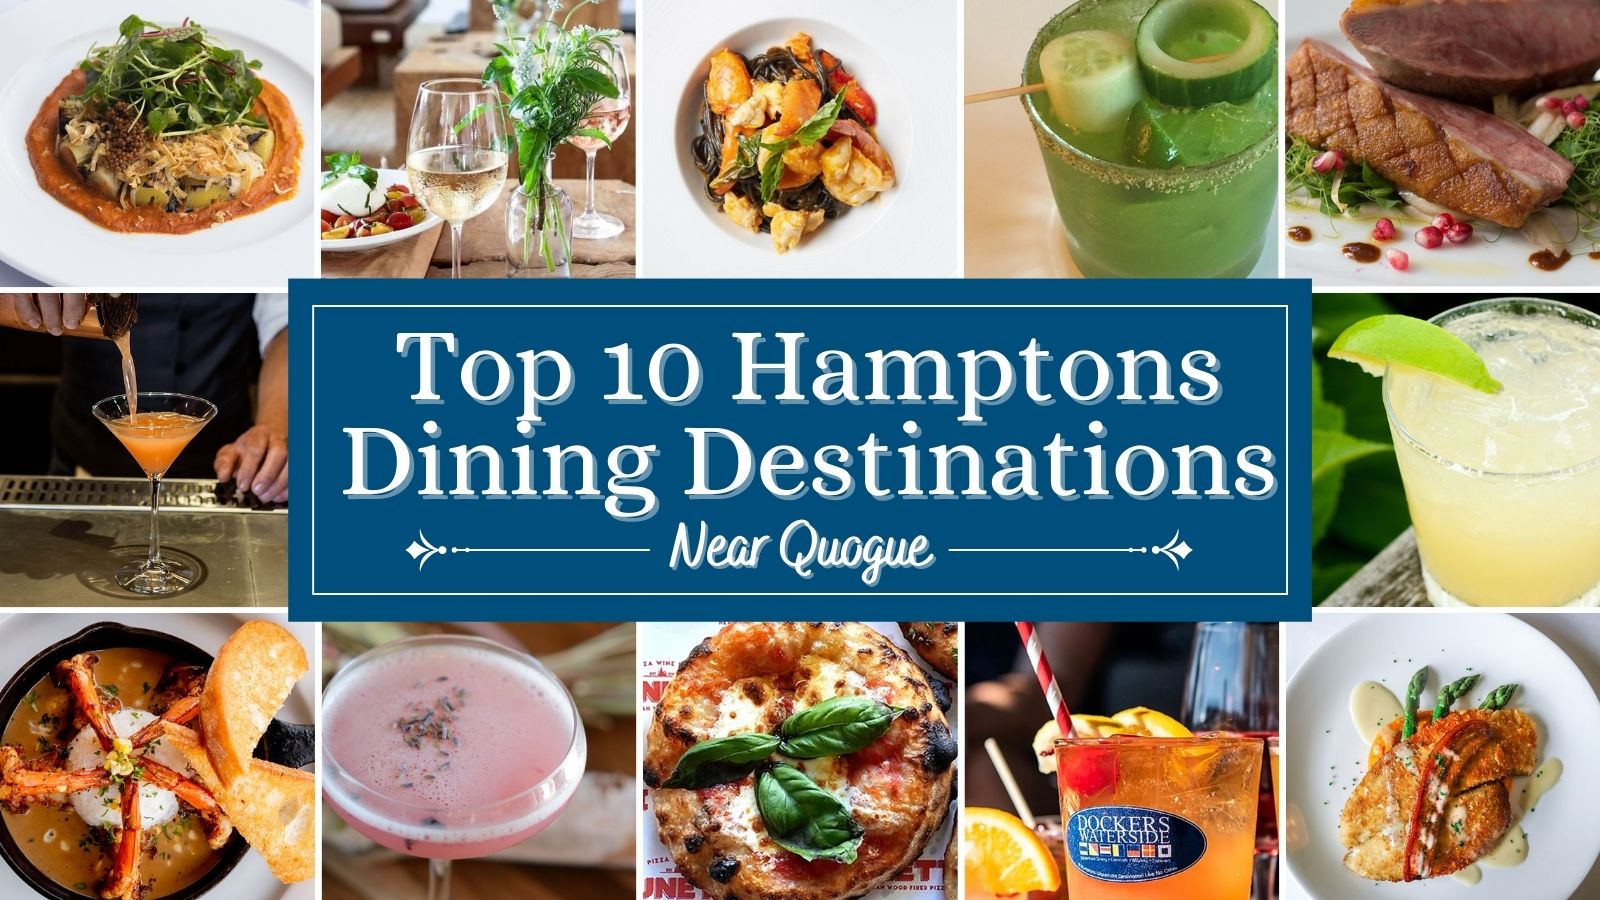 Top 10 Hamptons Dining Destinations